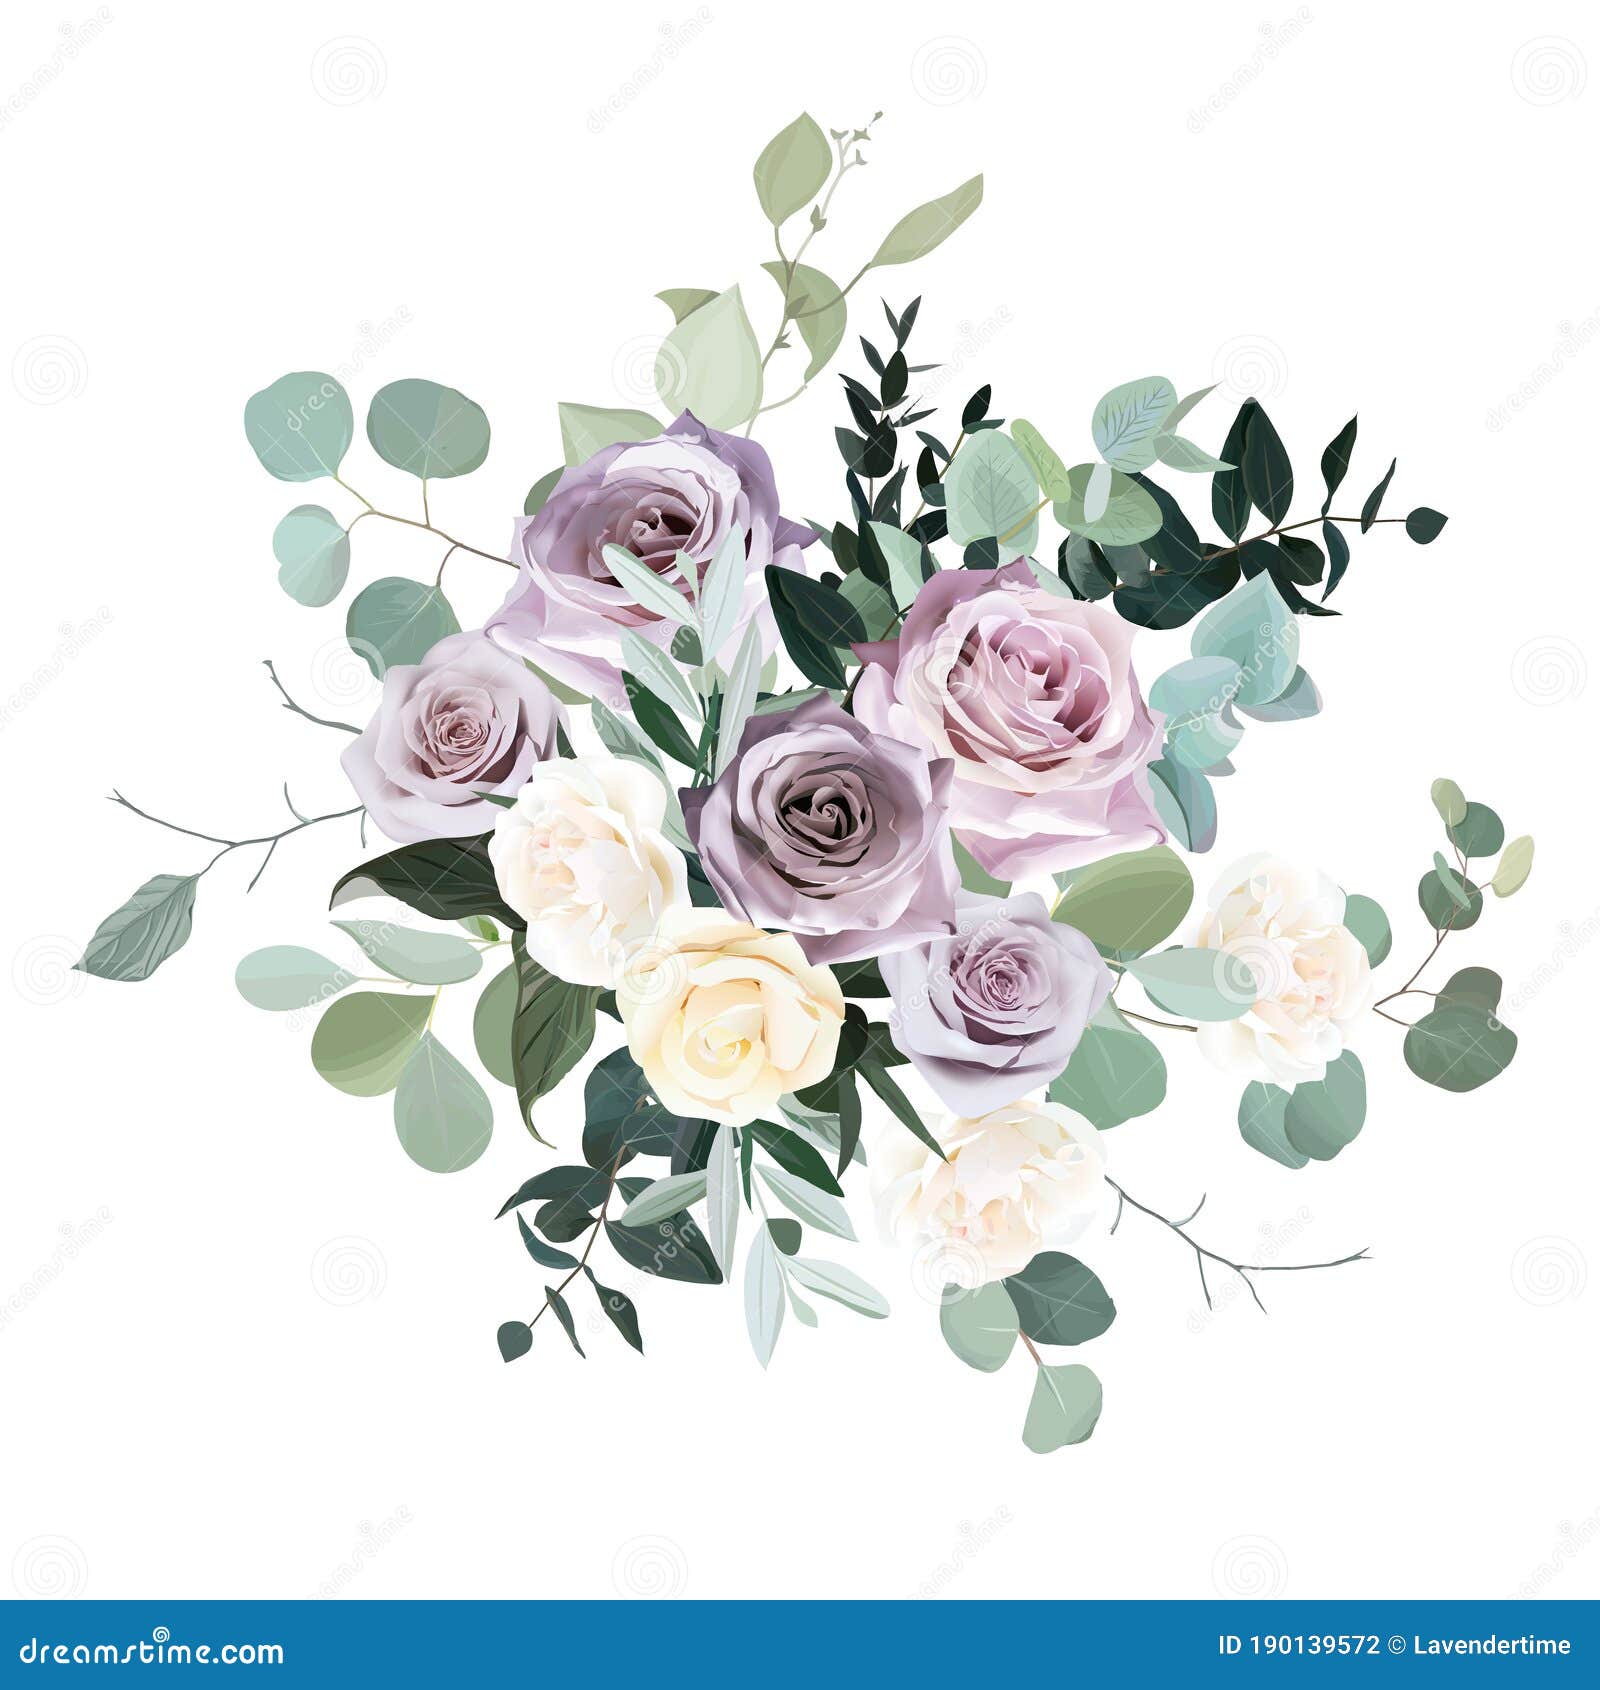 Dusty Violet Lavender, Mauve Antique Rose, Purple Pale and Ivory